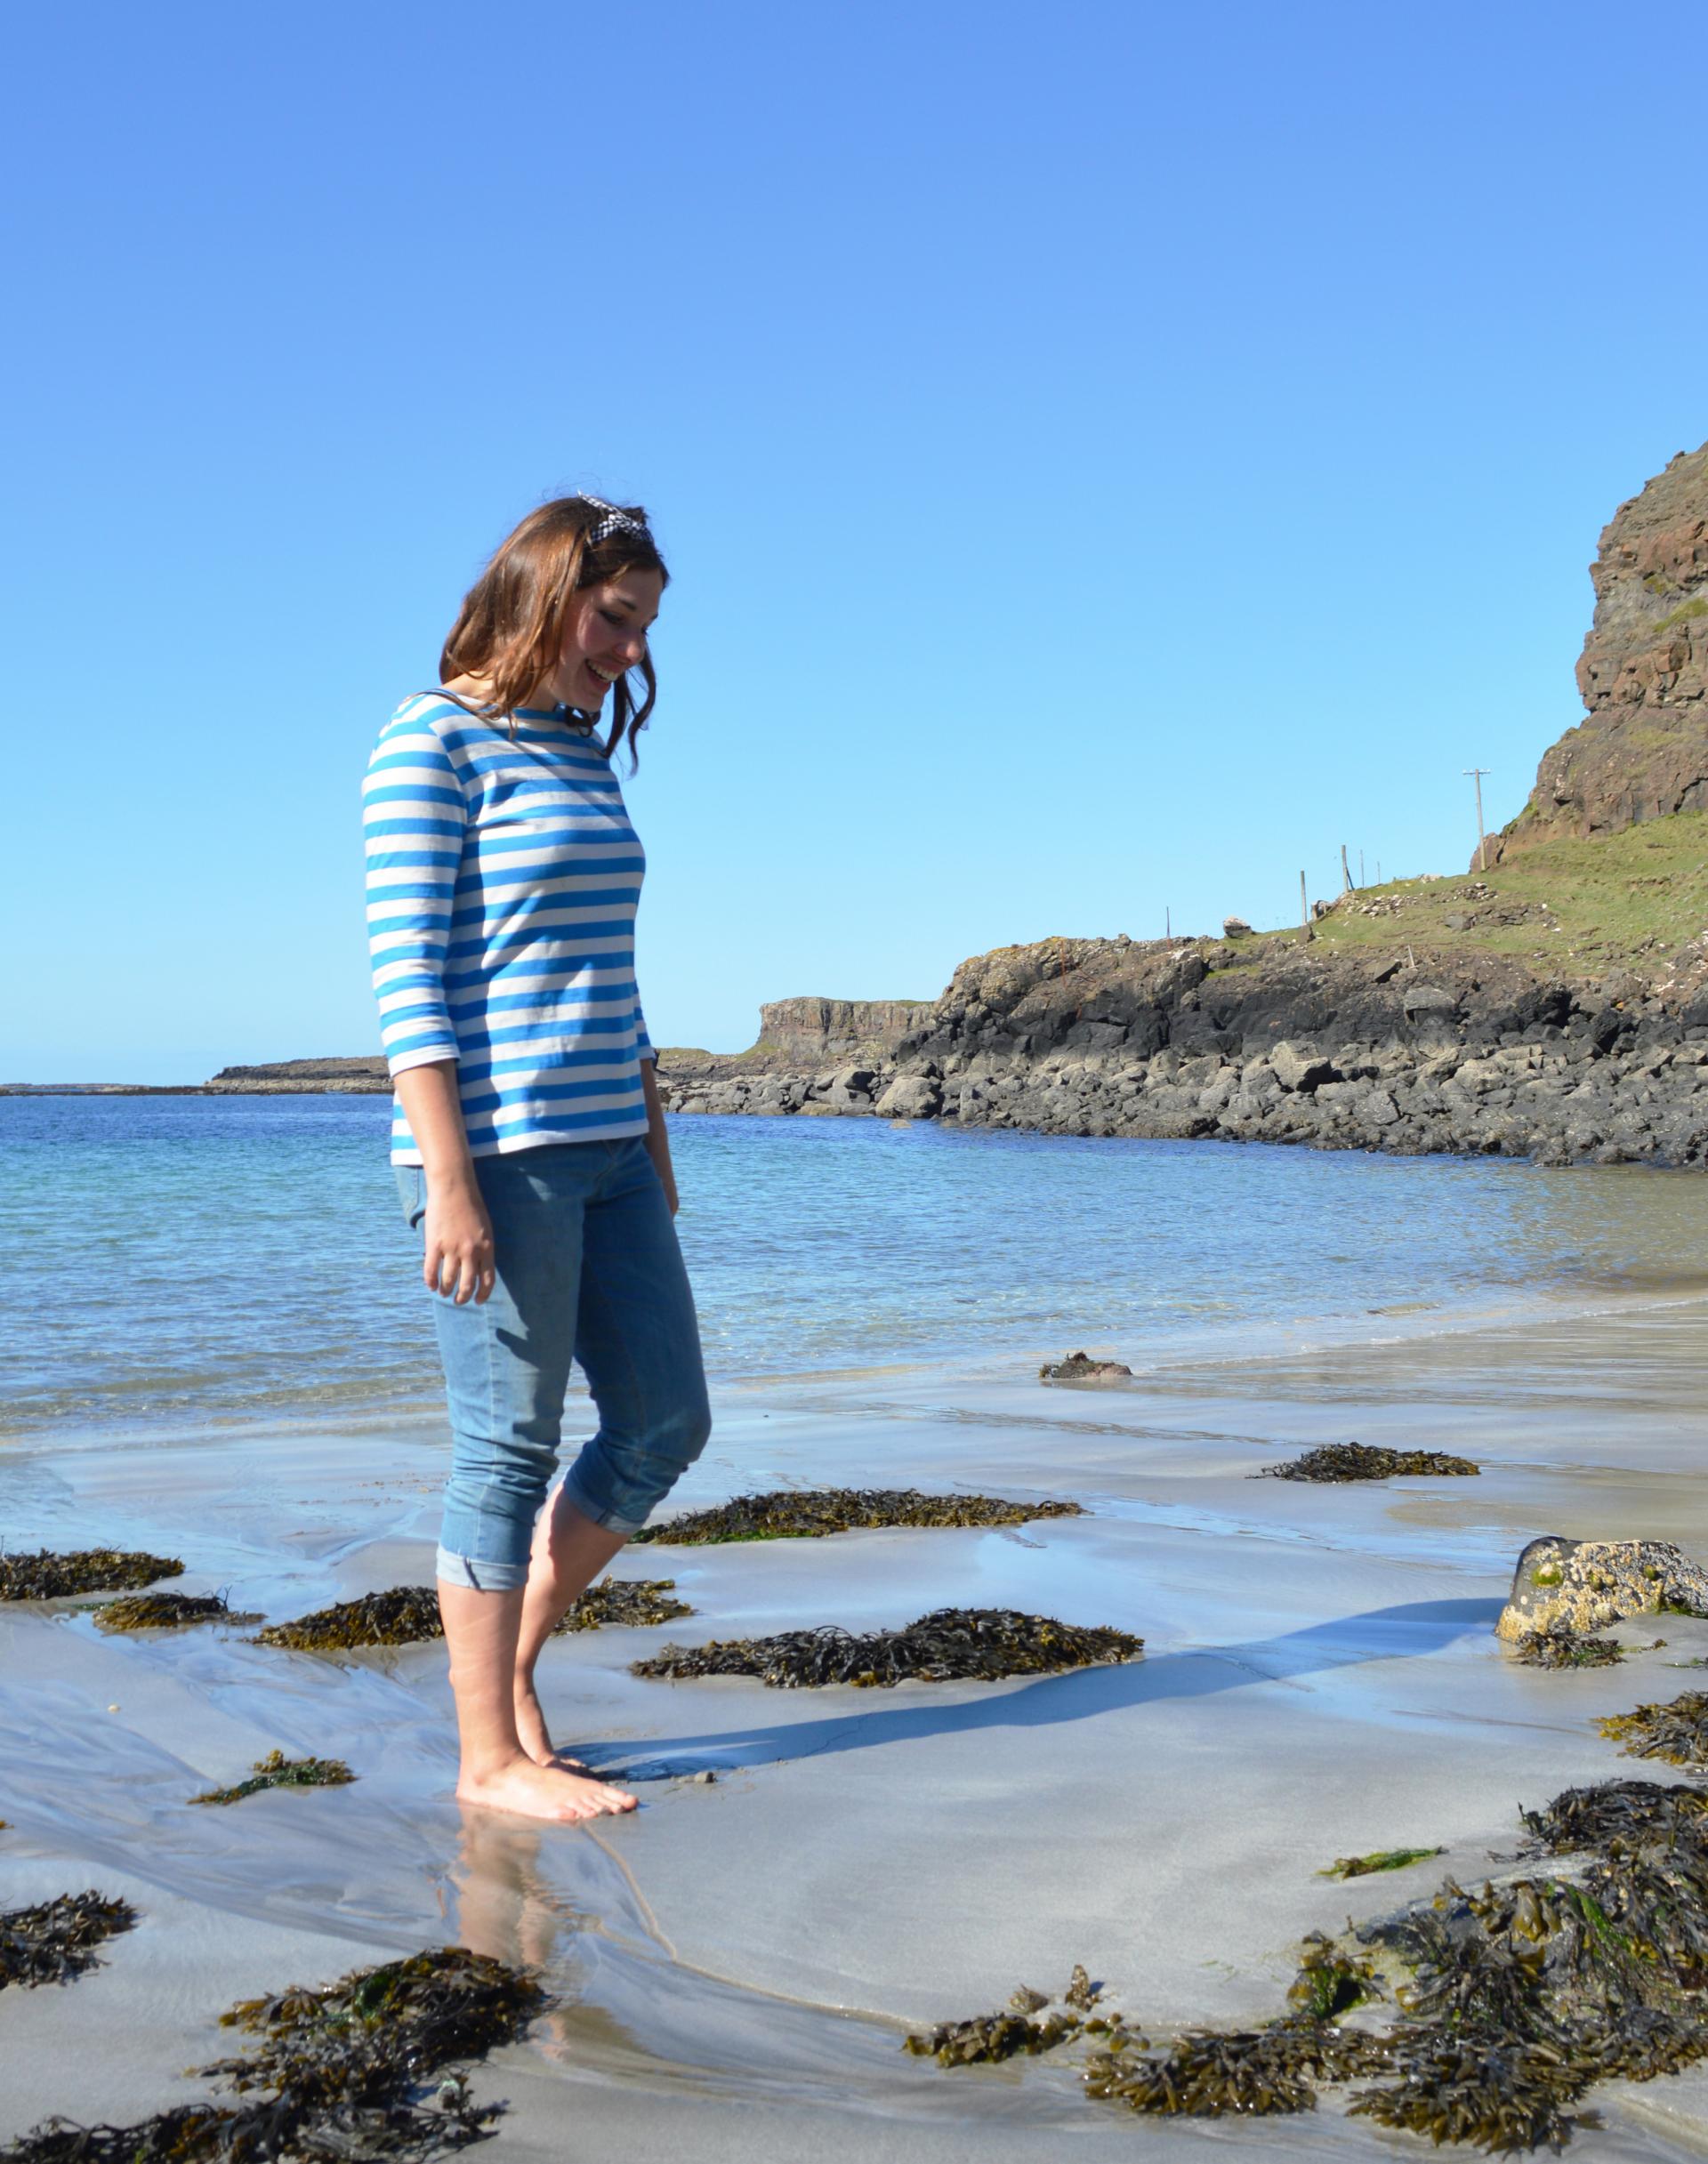 Scottish islands travel blog - island hopping inner Hebrides